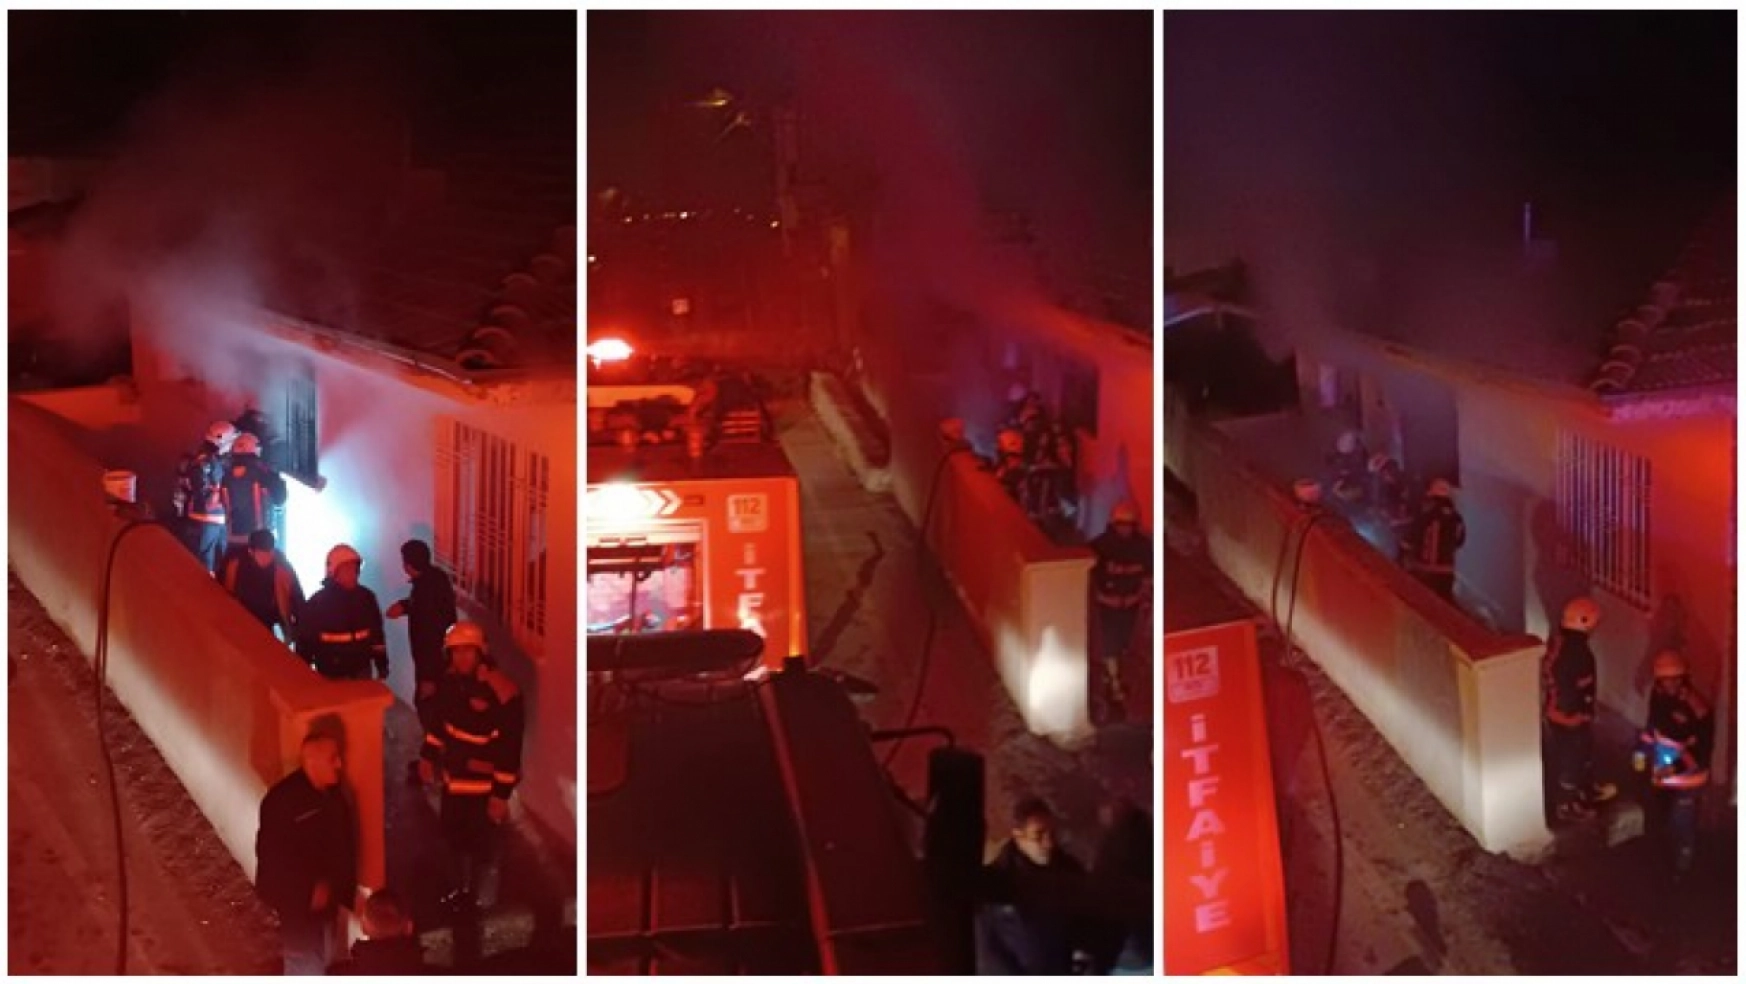 Malatya'da Ev Yangını Korkuttu